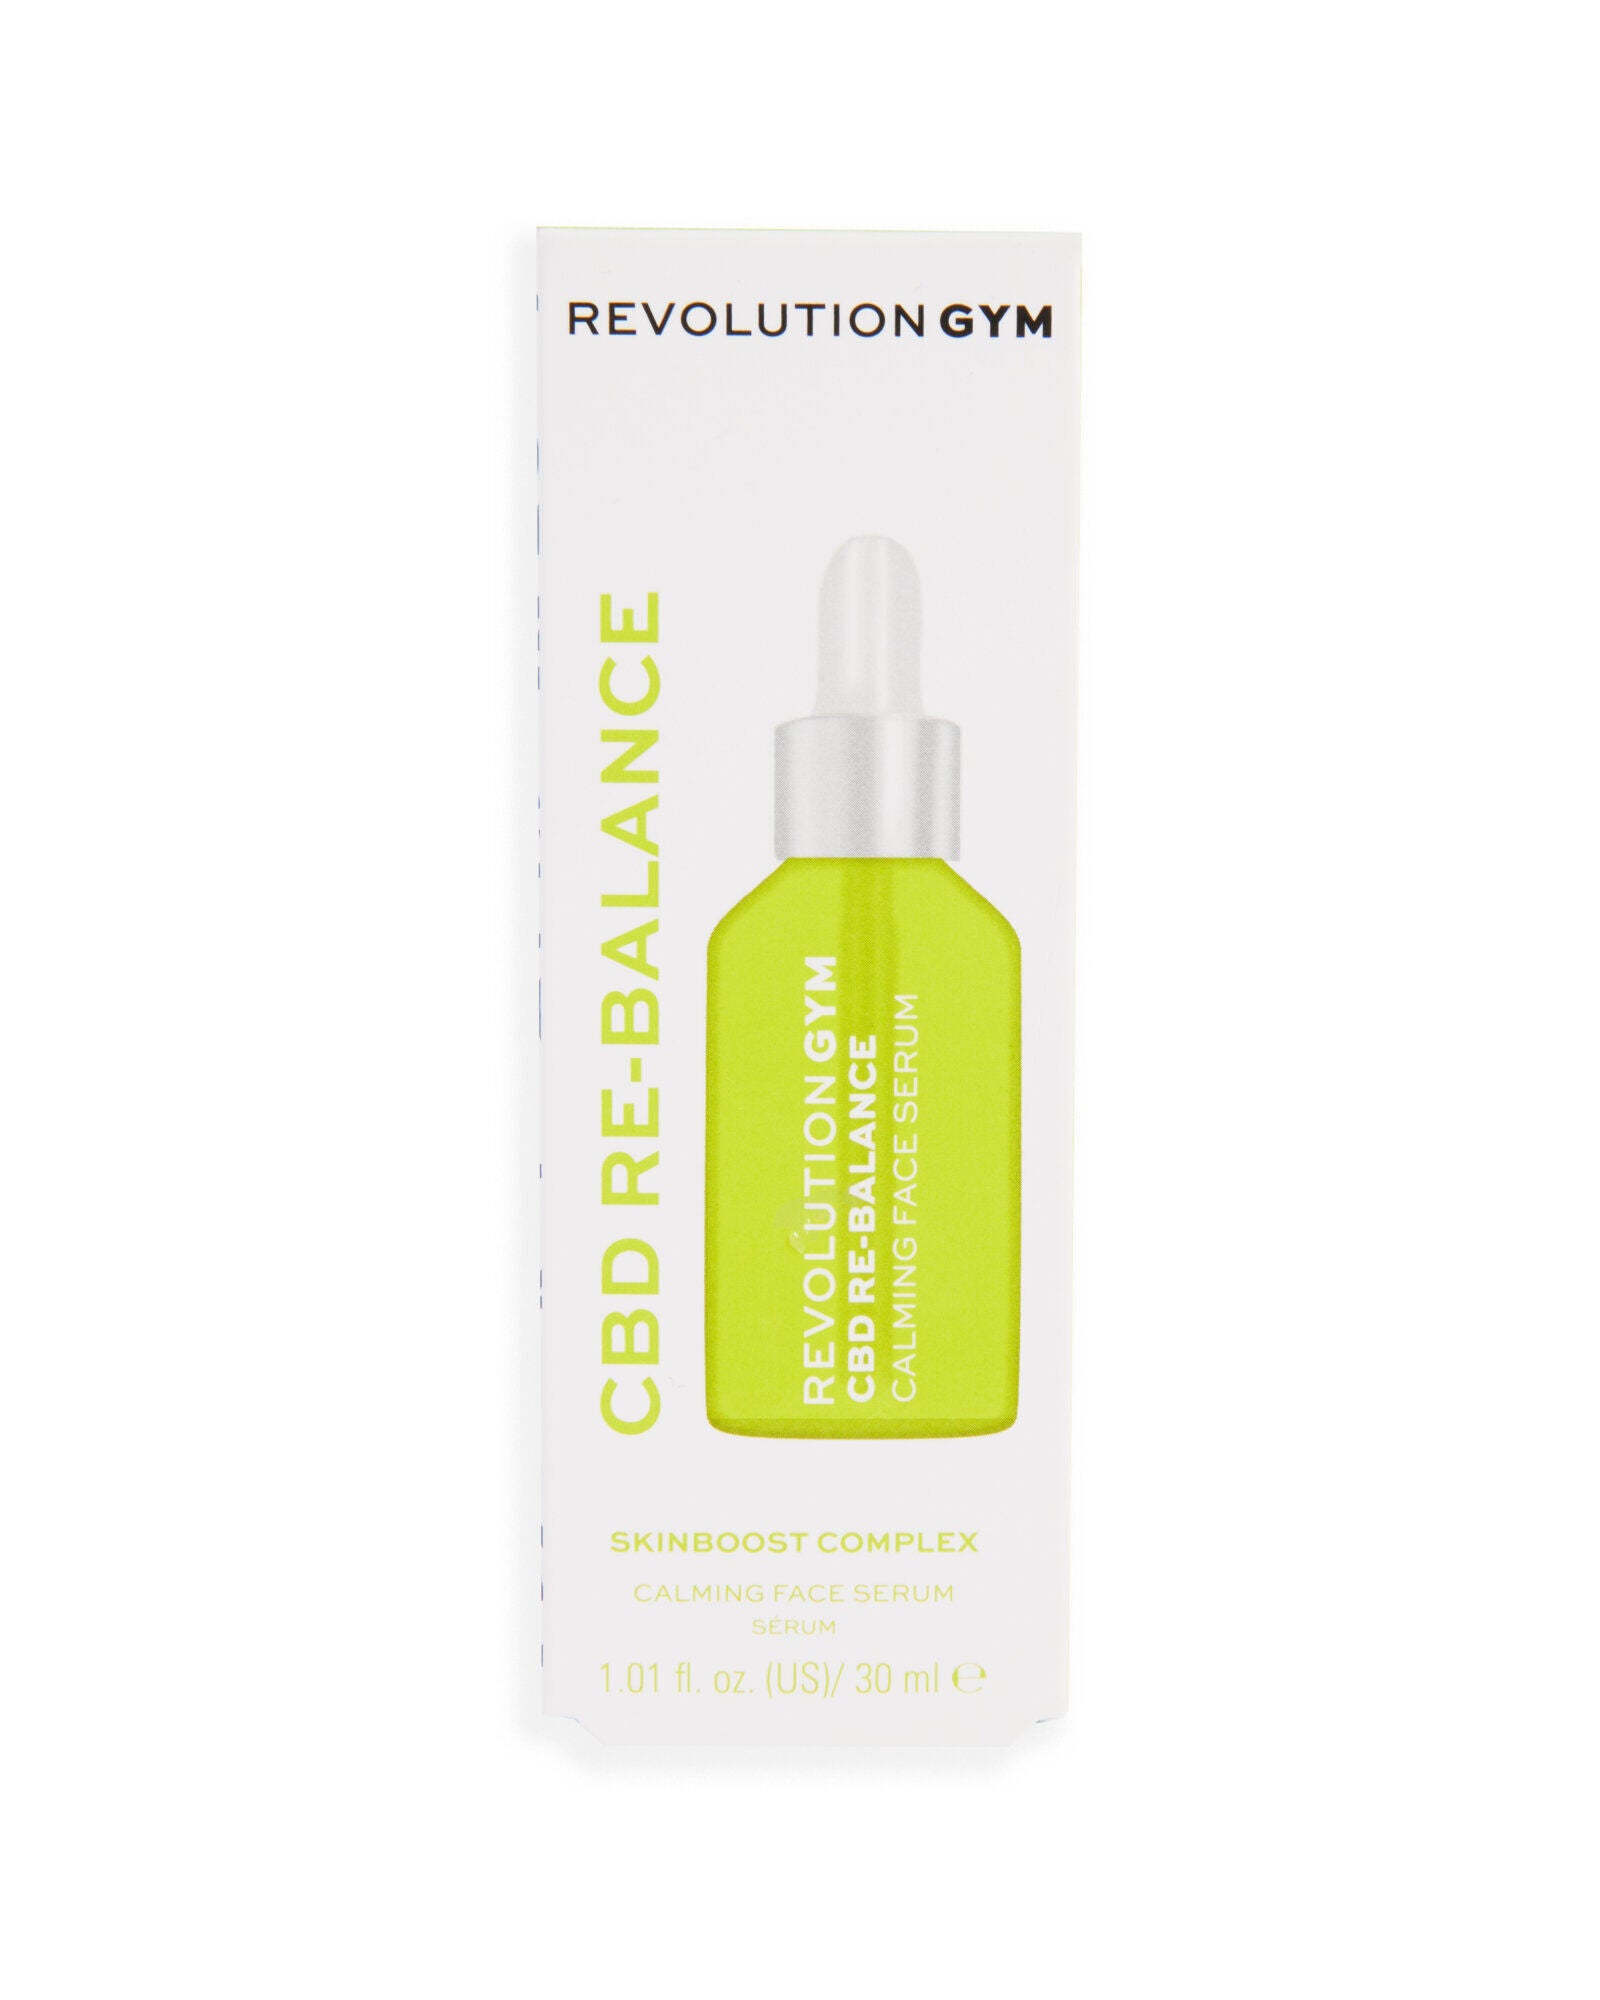 Revolution GYM CBD Re-Balance Calming Face Serum